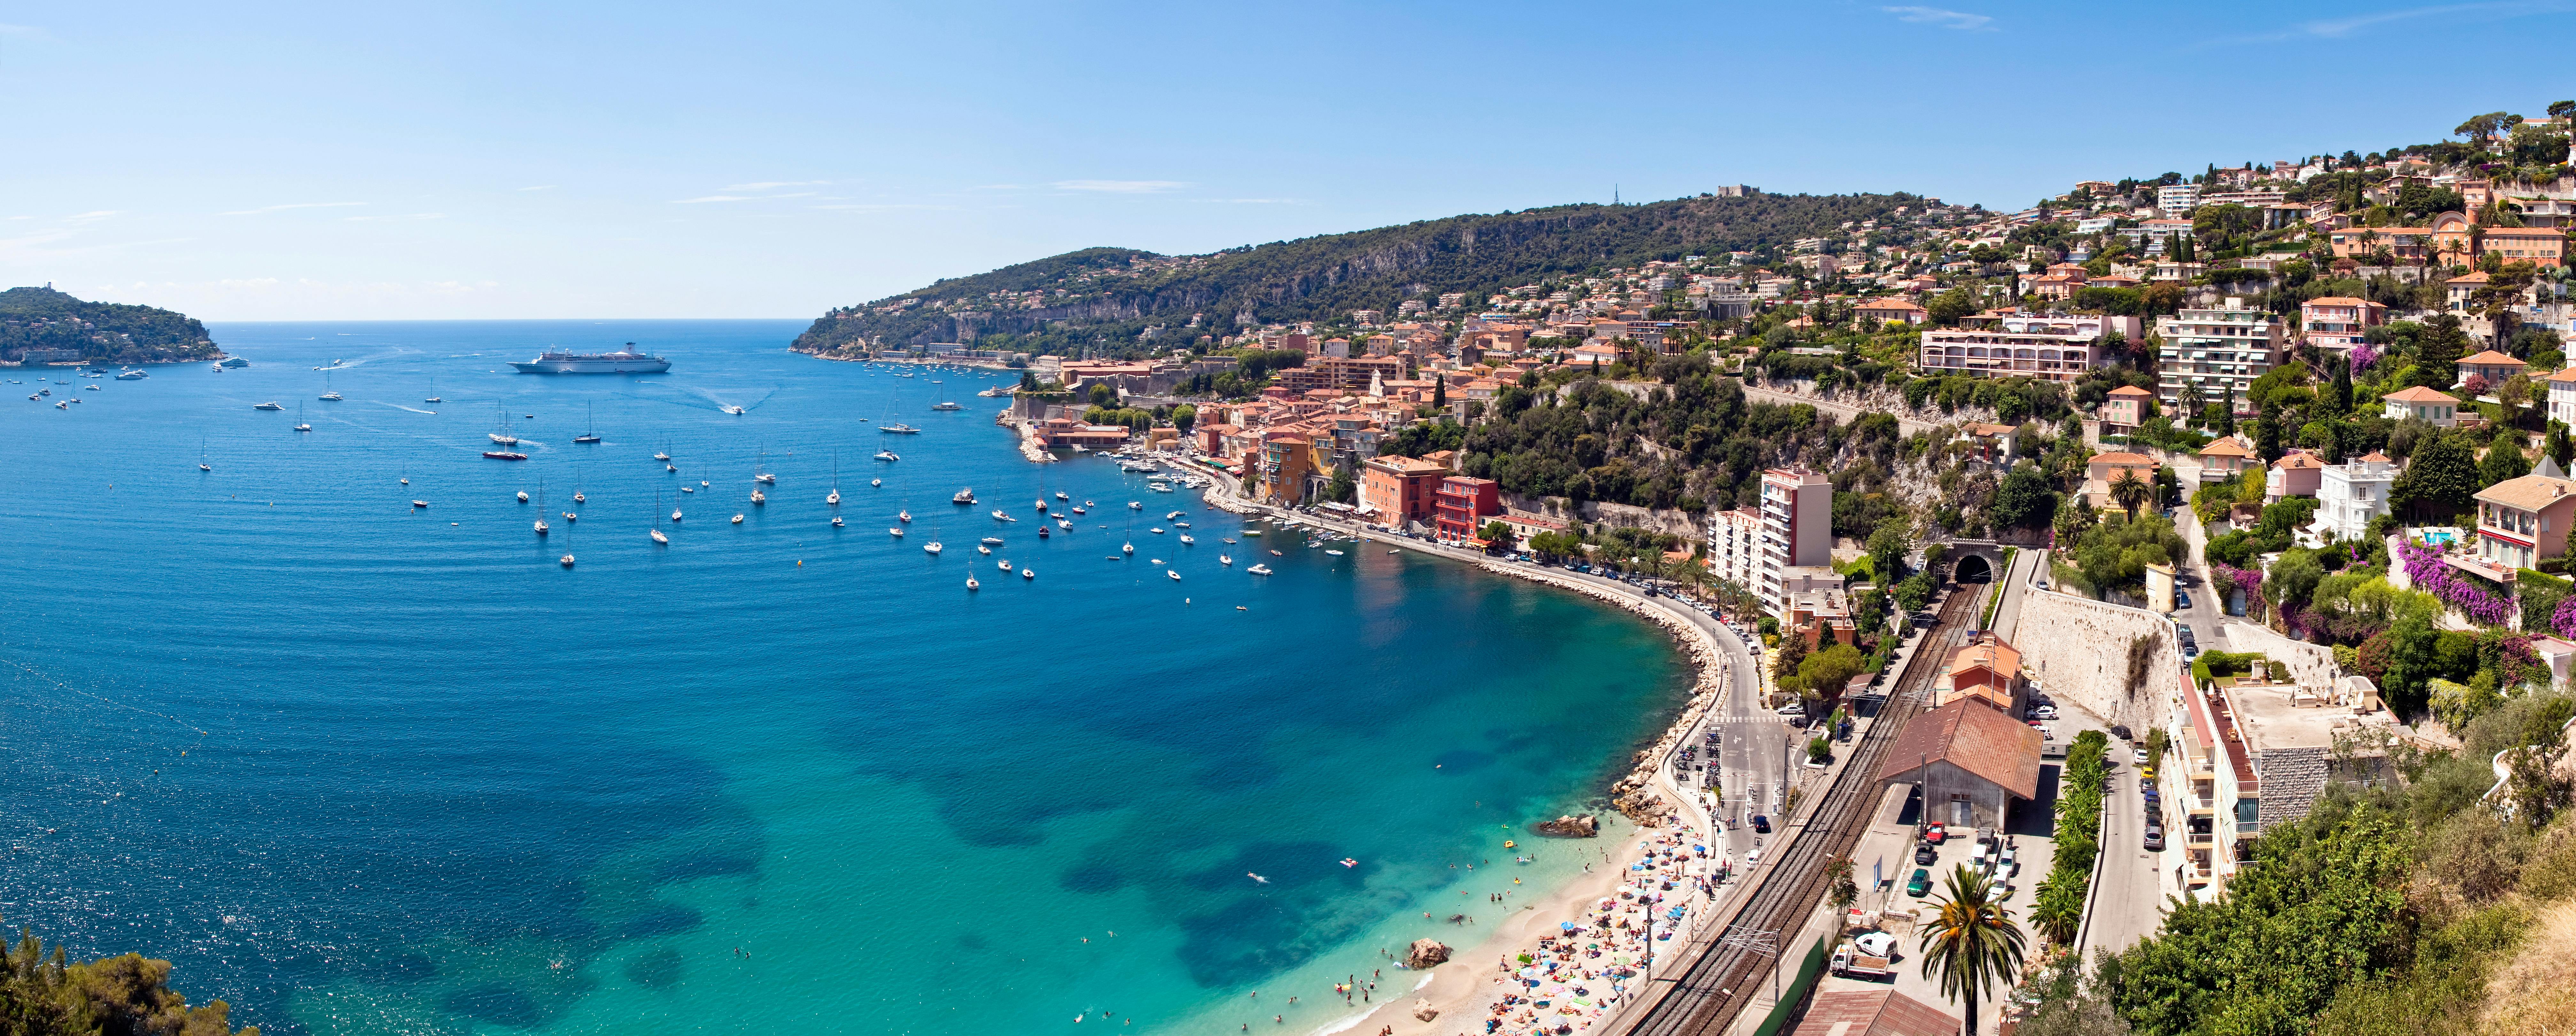 Privéreis naar Cannes en Antibes vanuit de havens van Nice of Villefranche